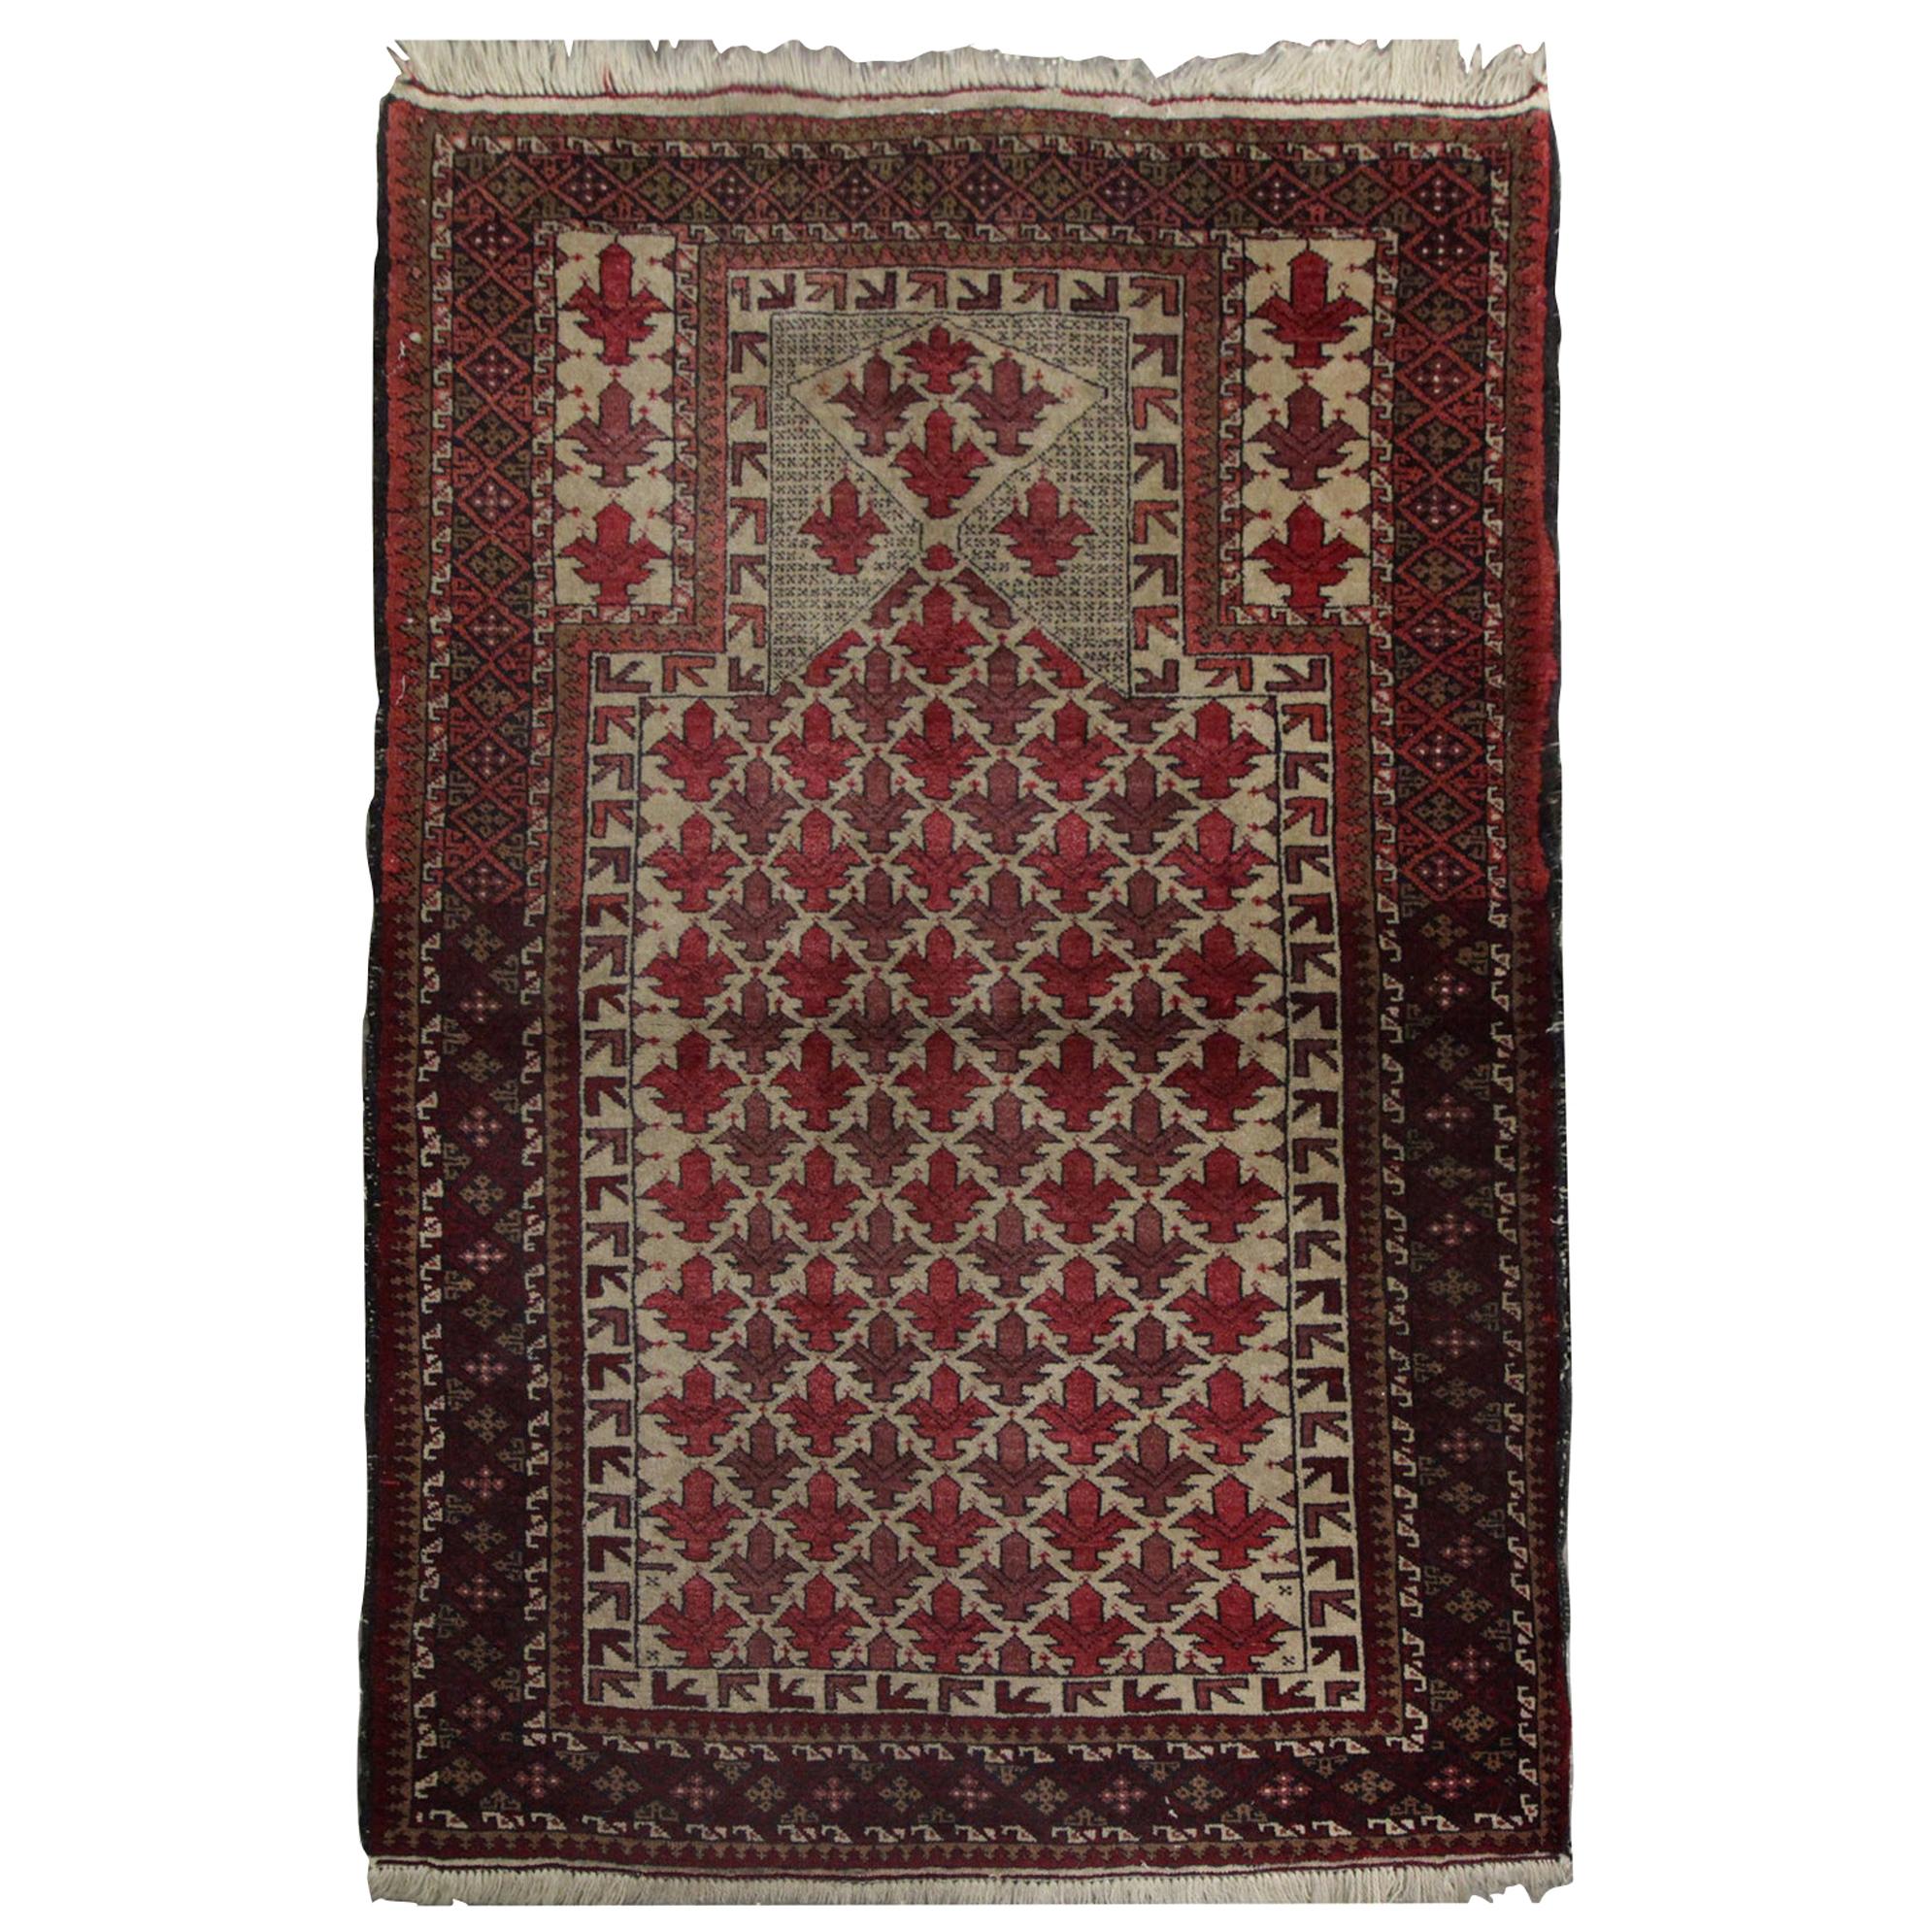 Qualität Antike Teppiche Afghan Baluch:: Handgefertigte Teppiche Wolle Wohnzimmer Teppiche